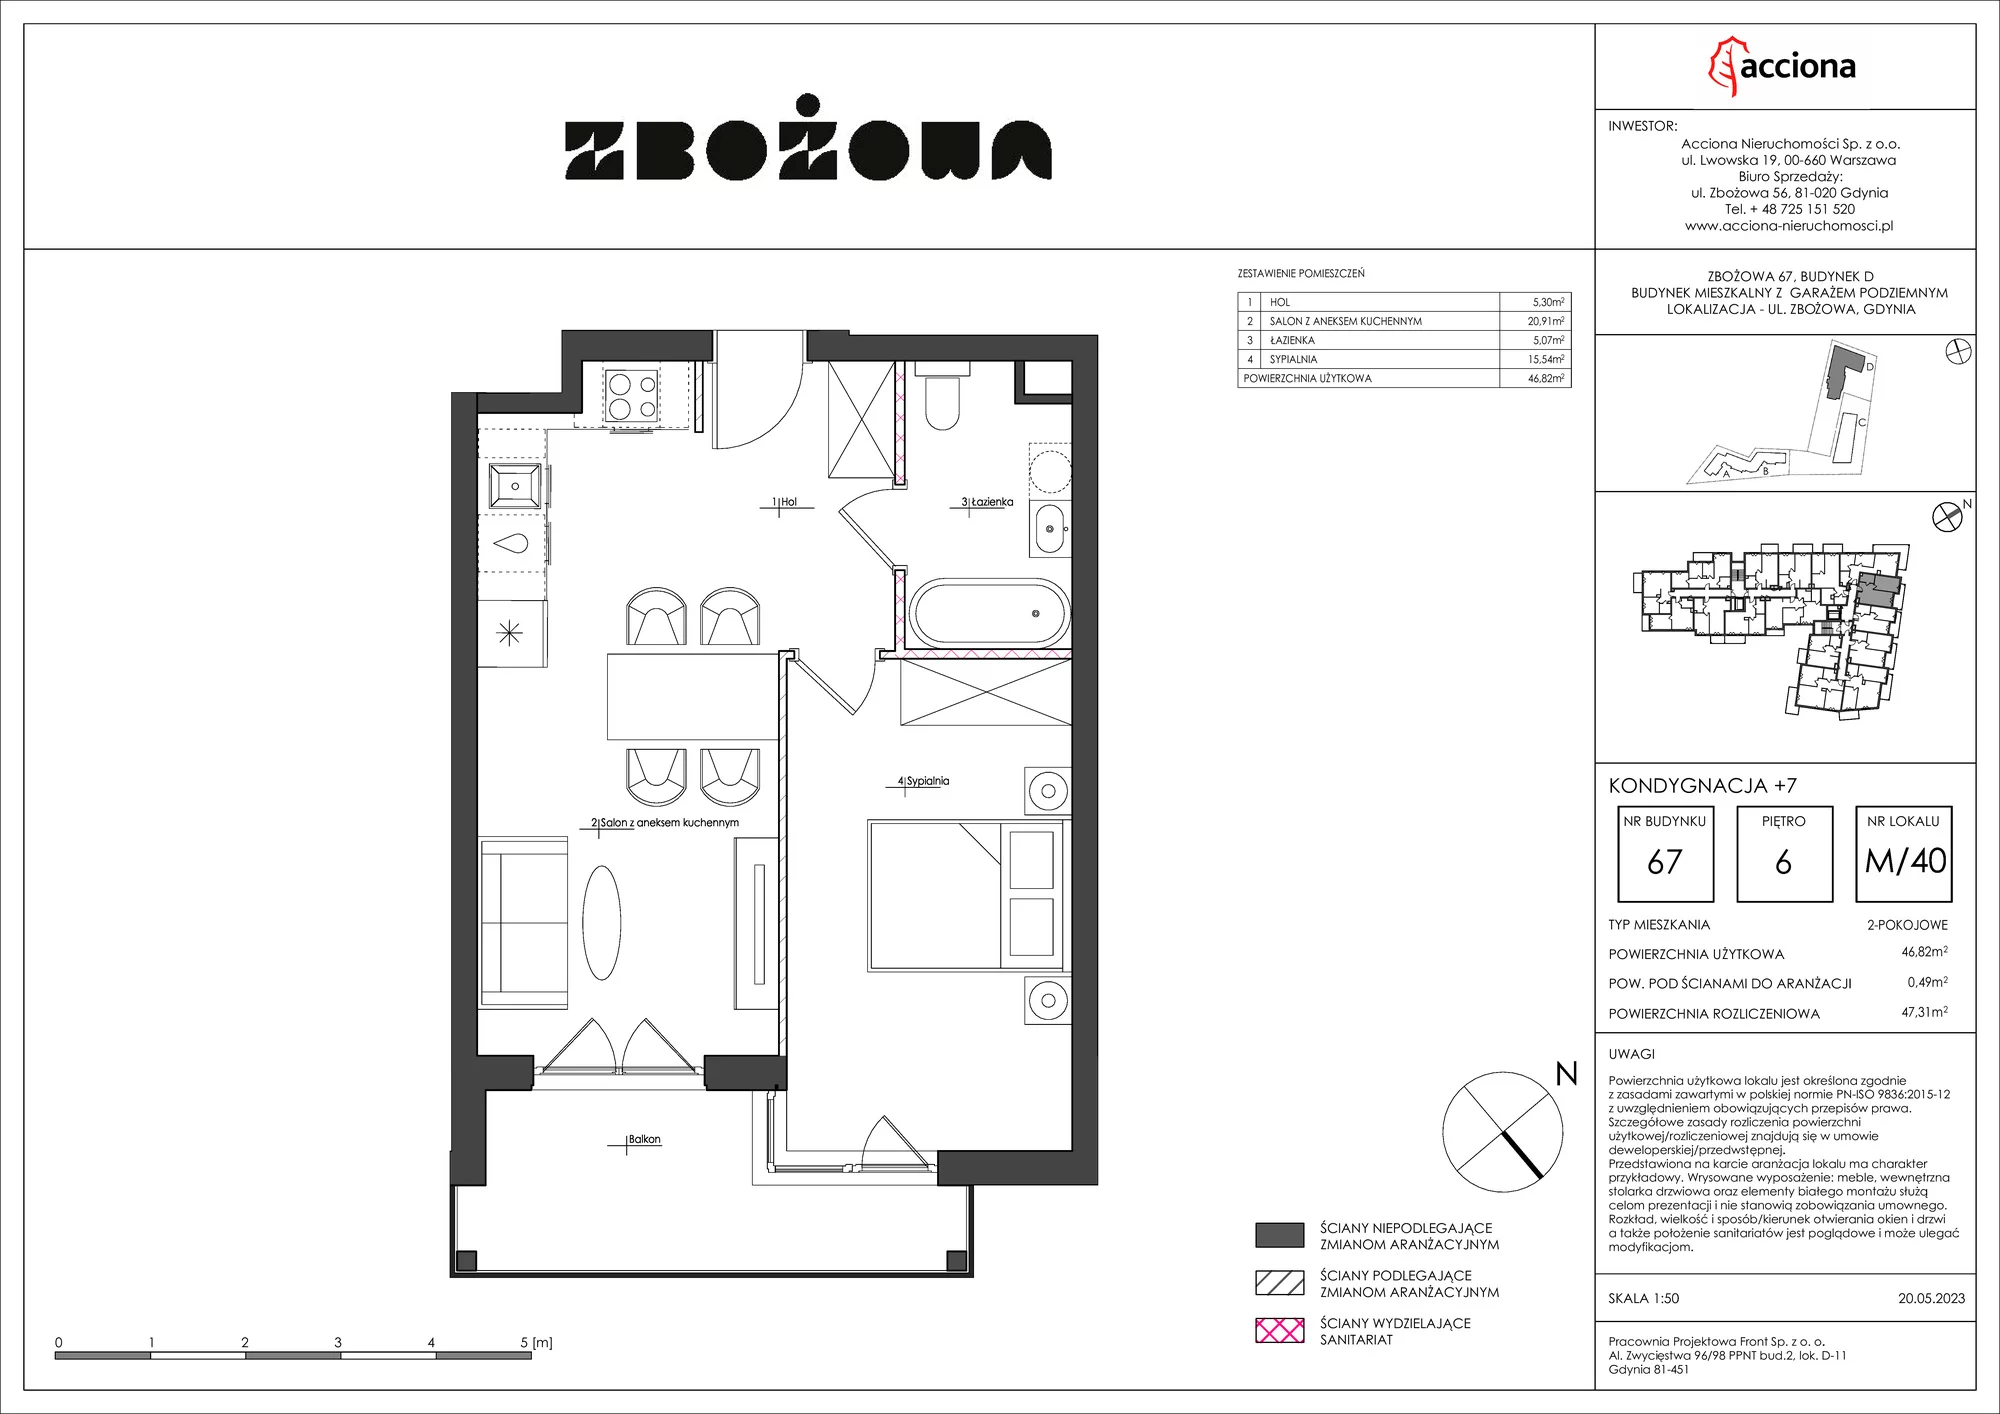 Mieszkanie 47,31 m², piętro 6, oferta nr 67.40, Zbożowa, Gdynia, Cisowa, ul. Zbożowa